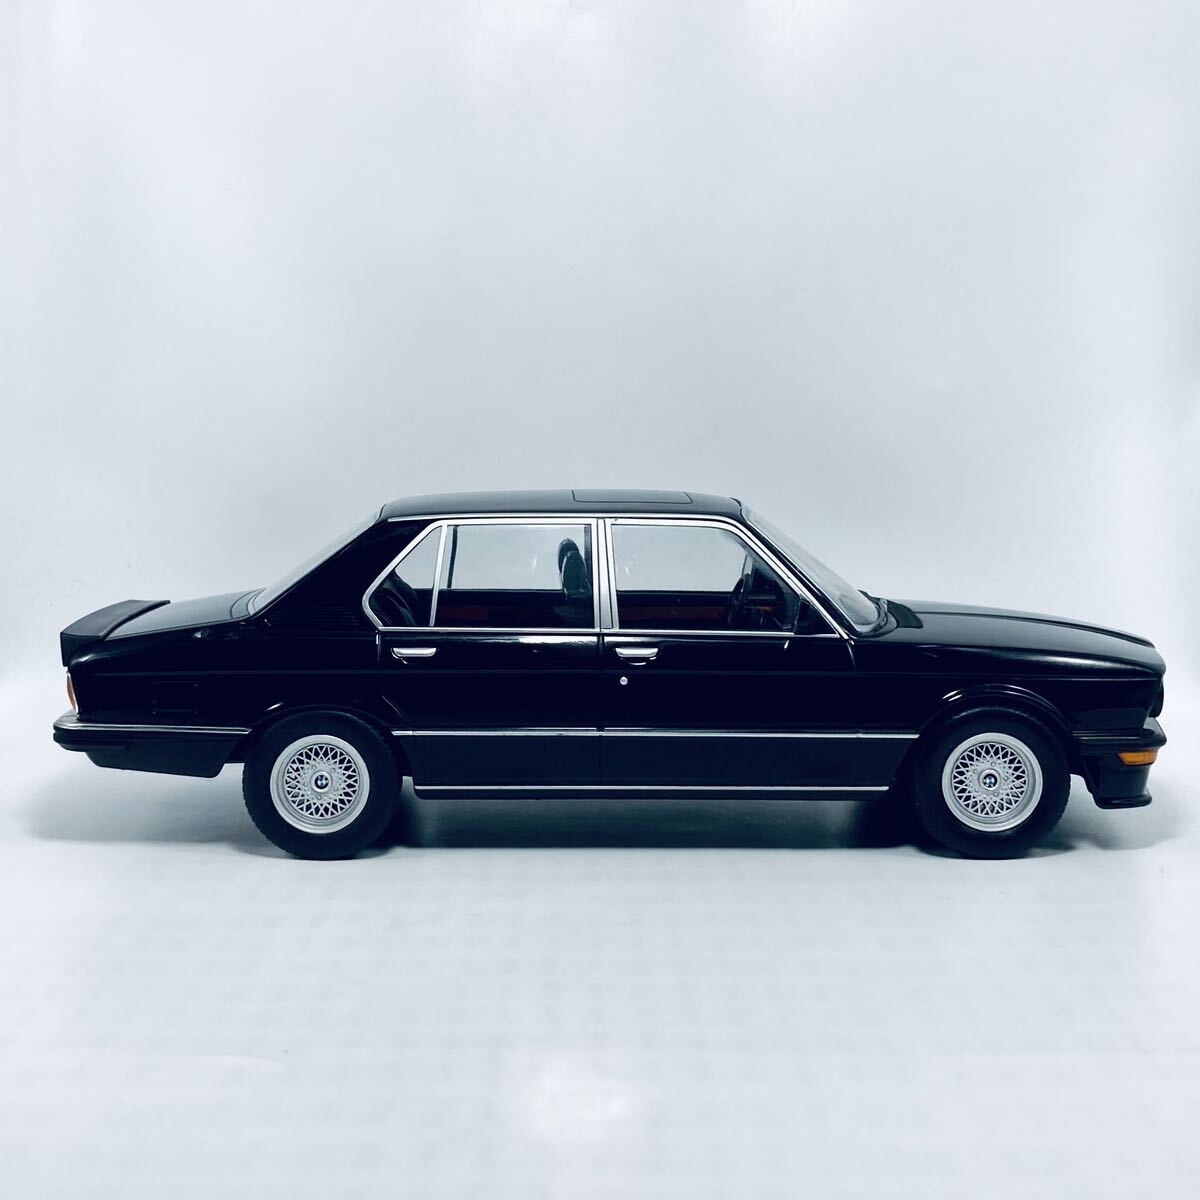 NOREV 1/18 BMW E12 M535i 1980 BLACK E12 type BMW M535i sedan black 183264